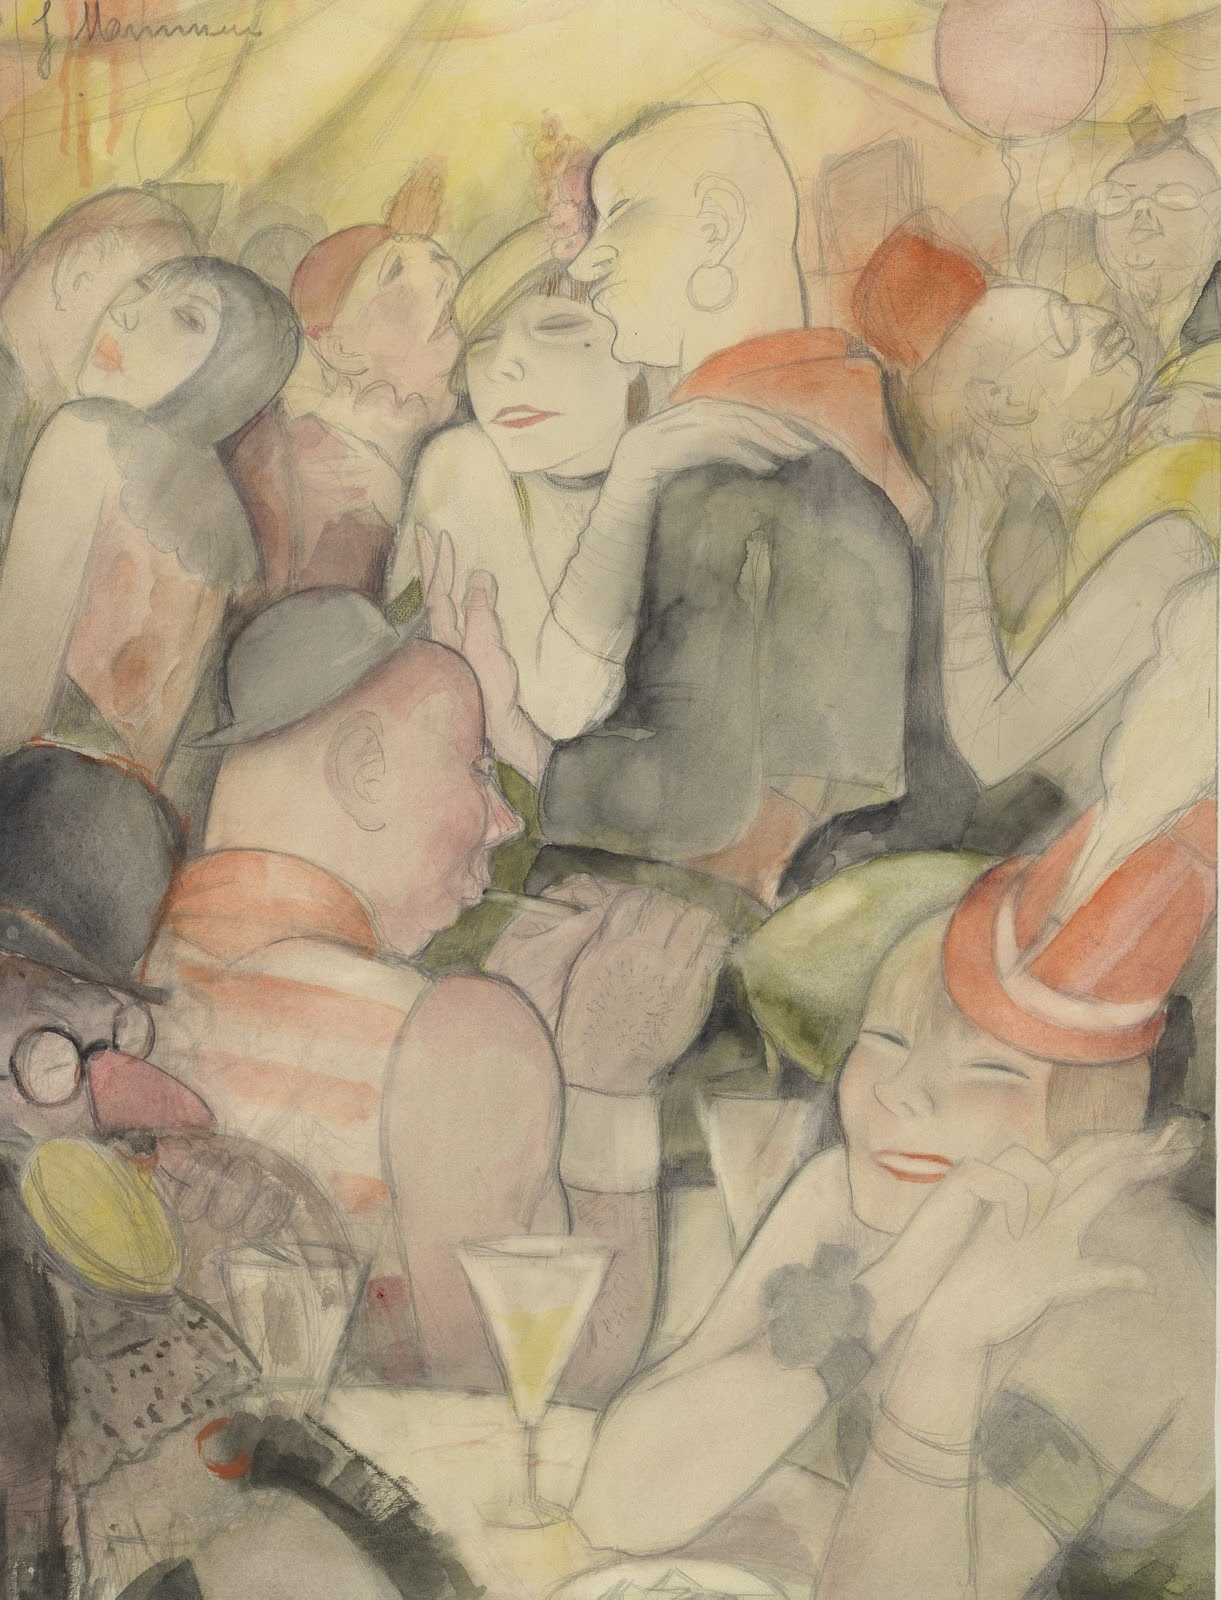 Jeanne Mammen: Carnival in Berlin N III (Fasching Berlin N III), c. 1930, watercolor
